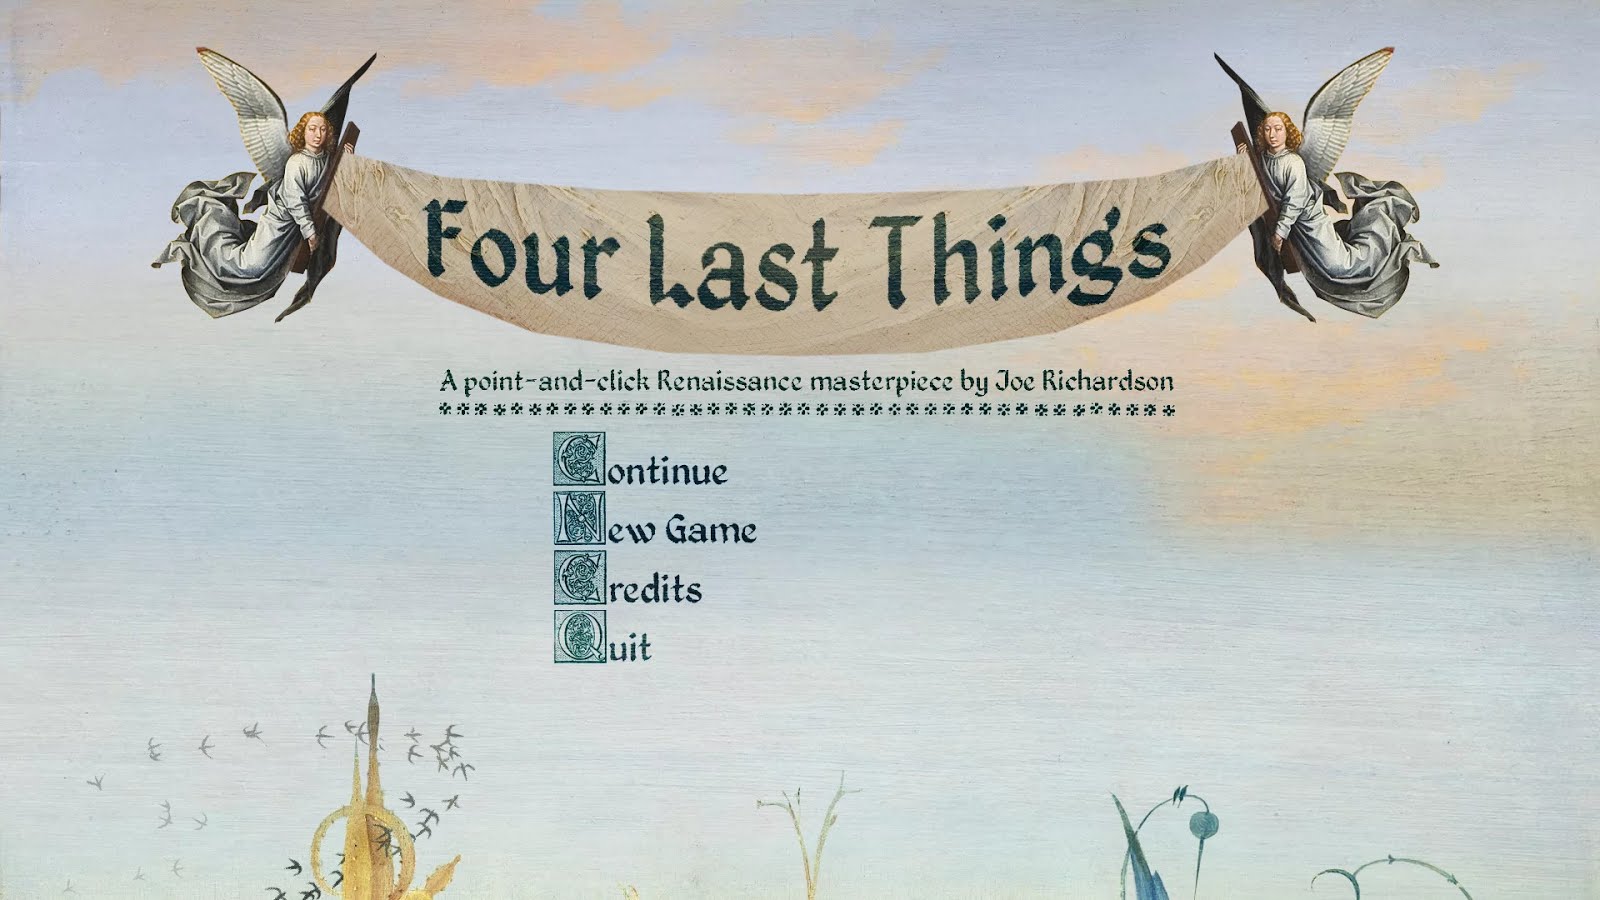 Four be the things. Four last things. Four last things игра. Four last things breihel.